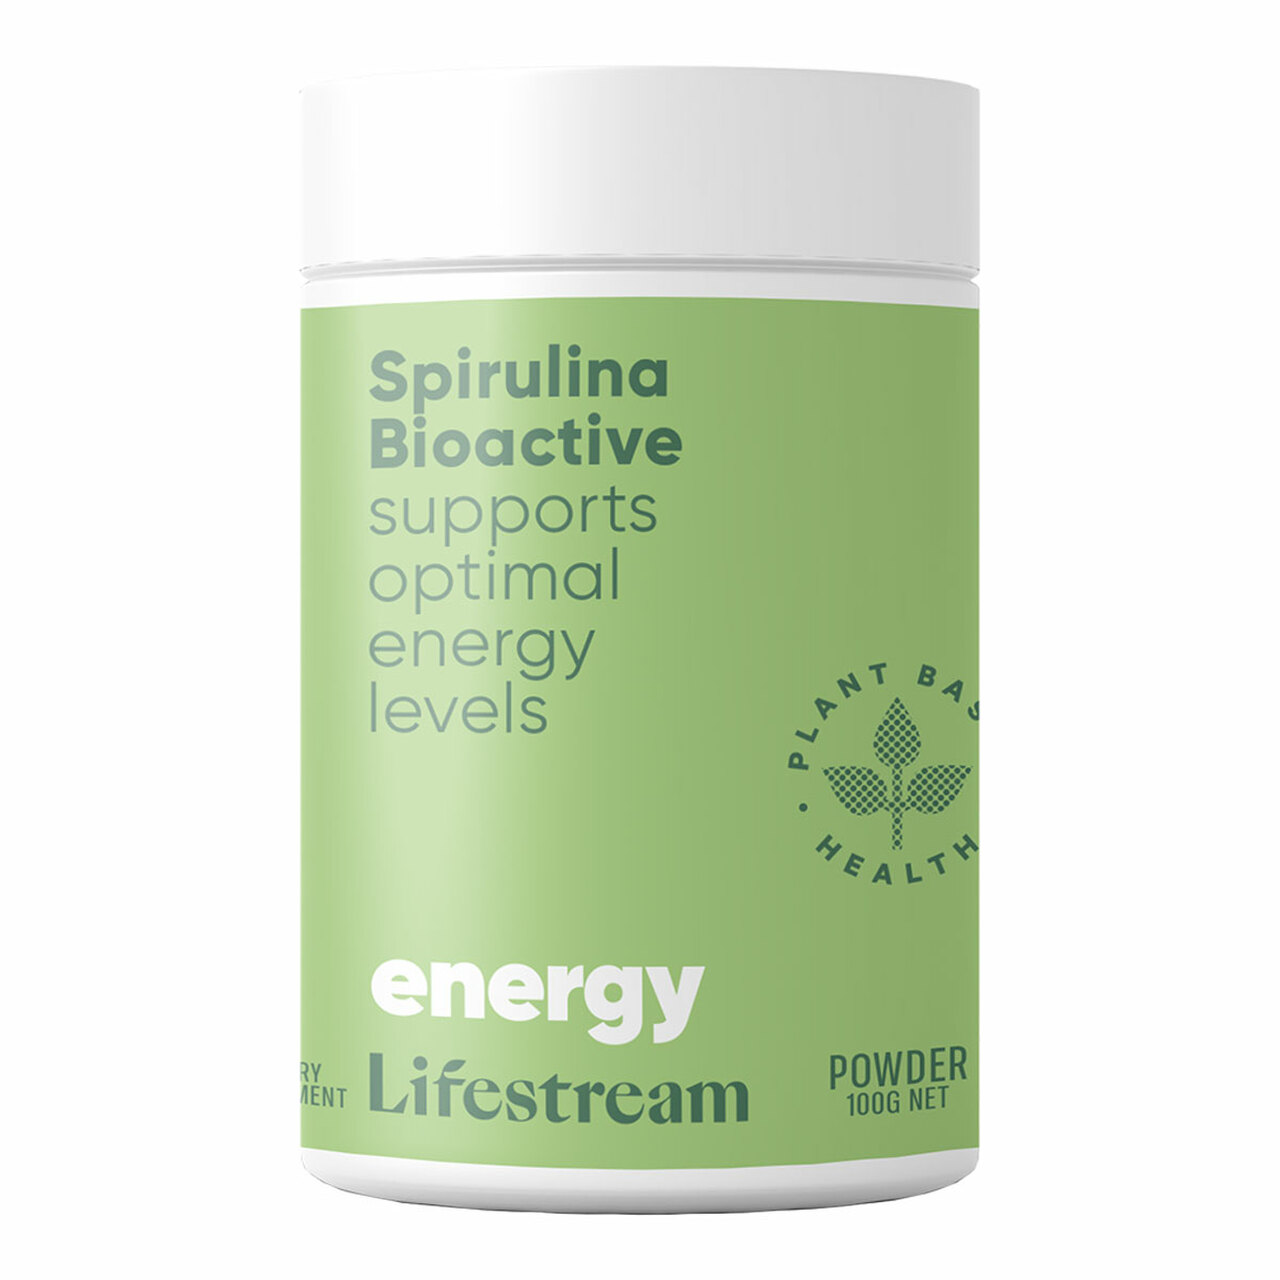 Lifestream Spirulina Bioactive 100g Powder